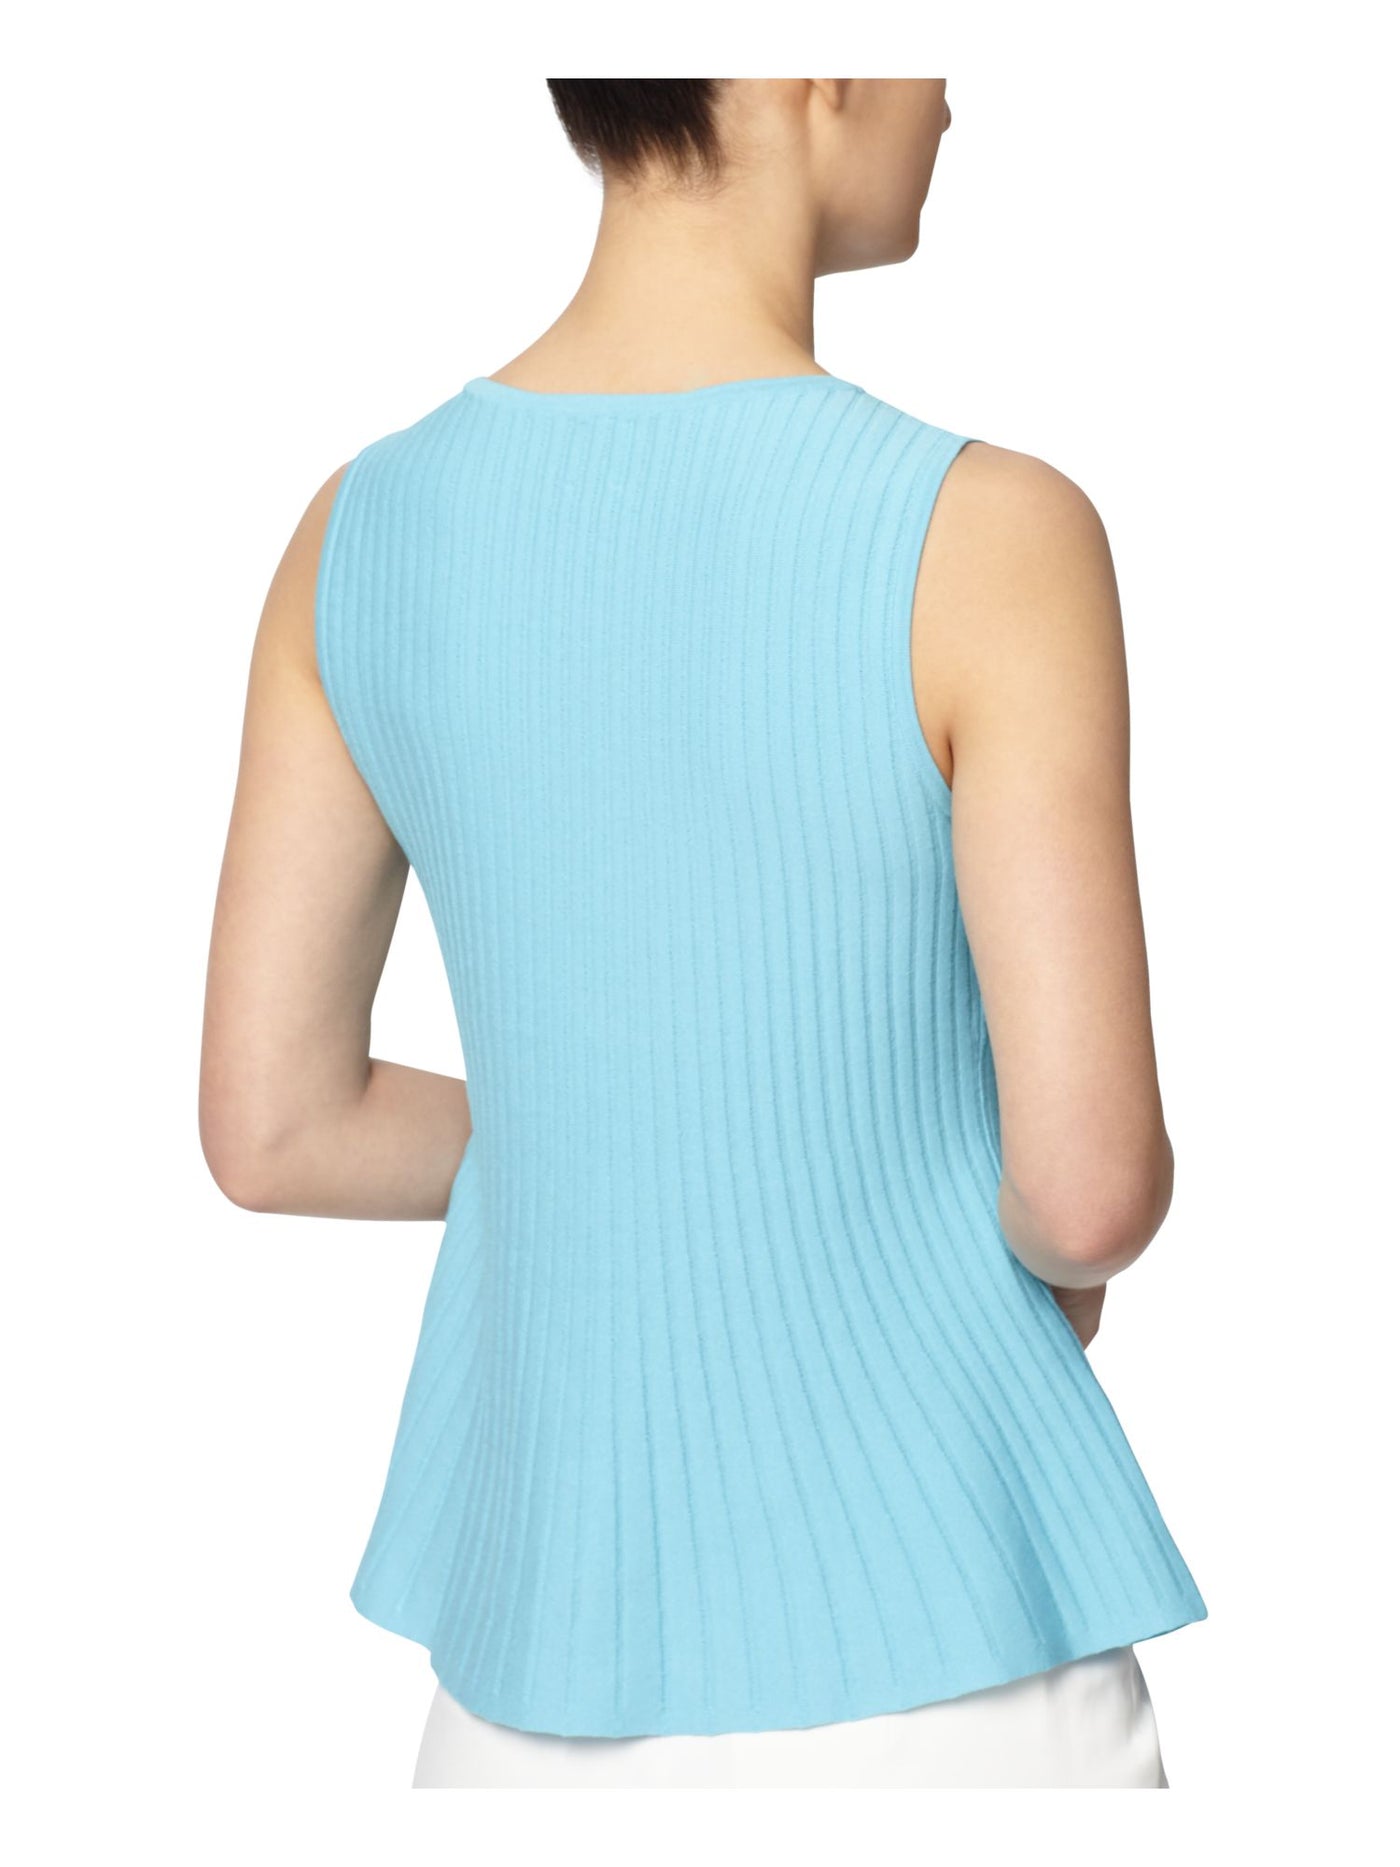 ANNE KLEIN Womens Turquoise Stretch Crew Neck Wear To Work Peplum Sweater XL